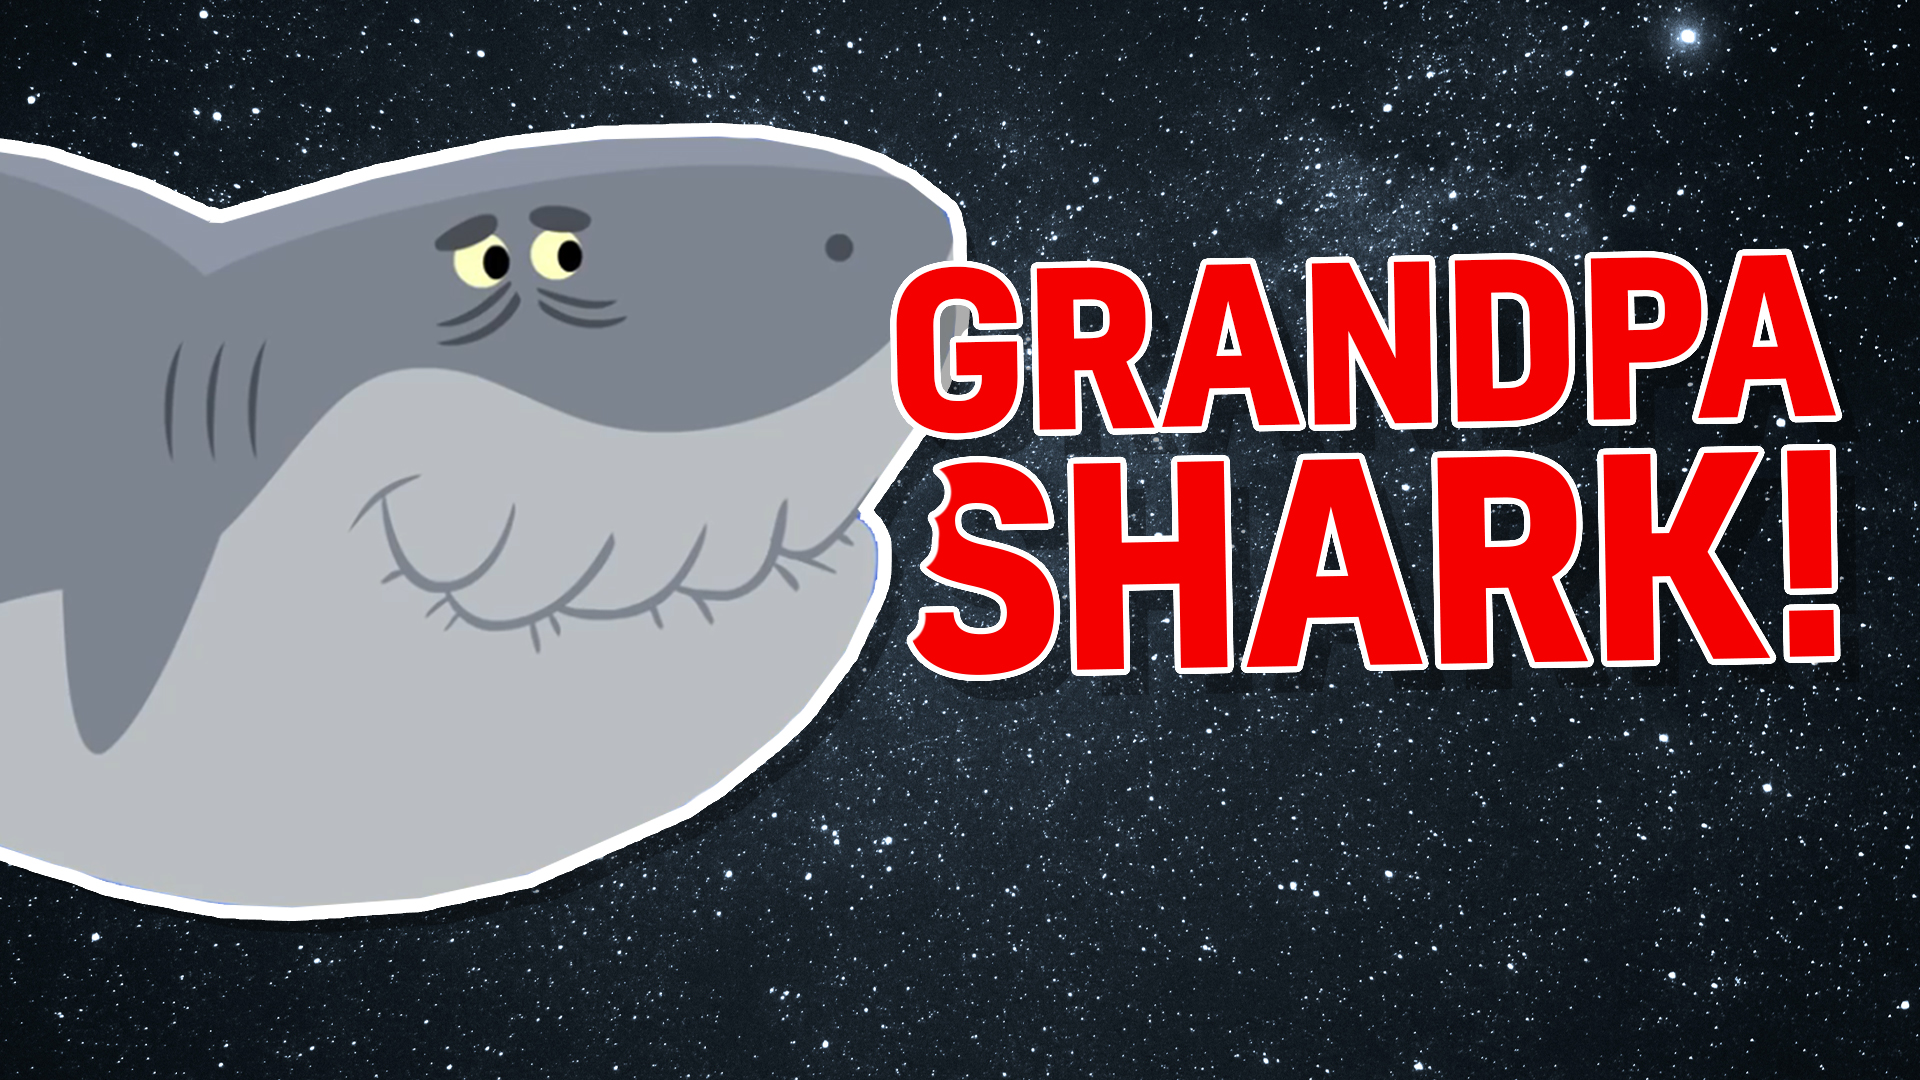 Grandpa shark